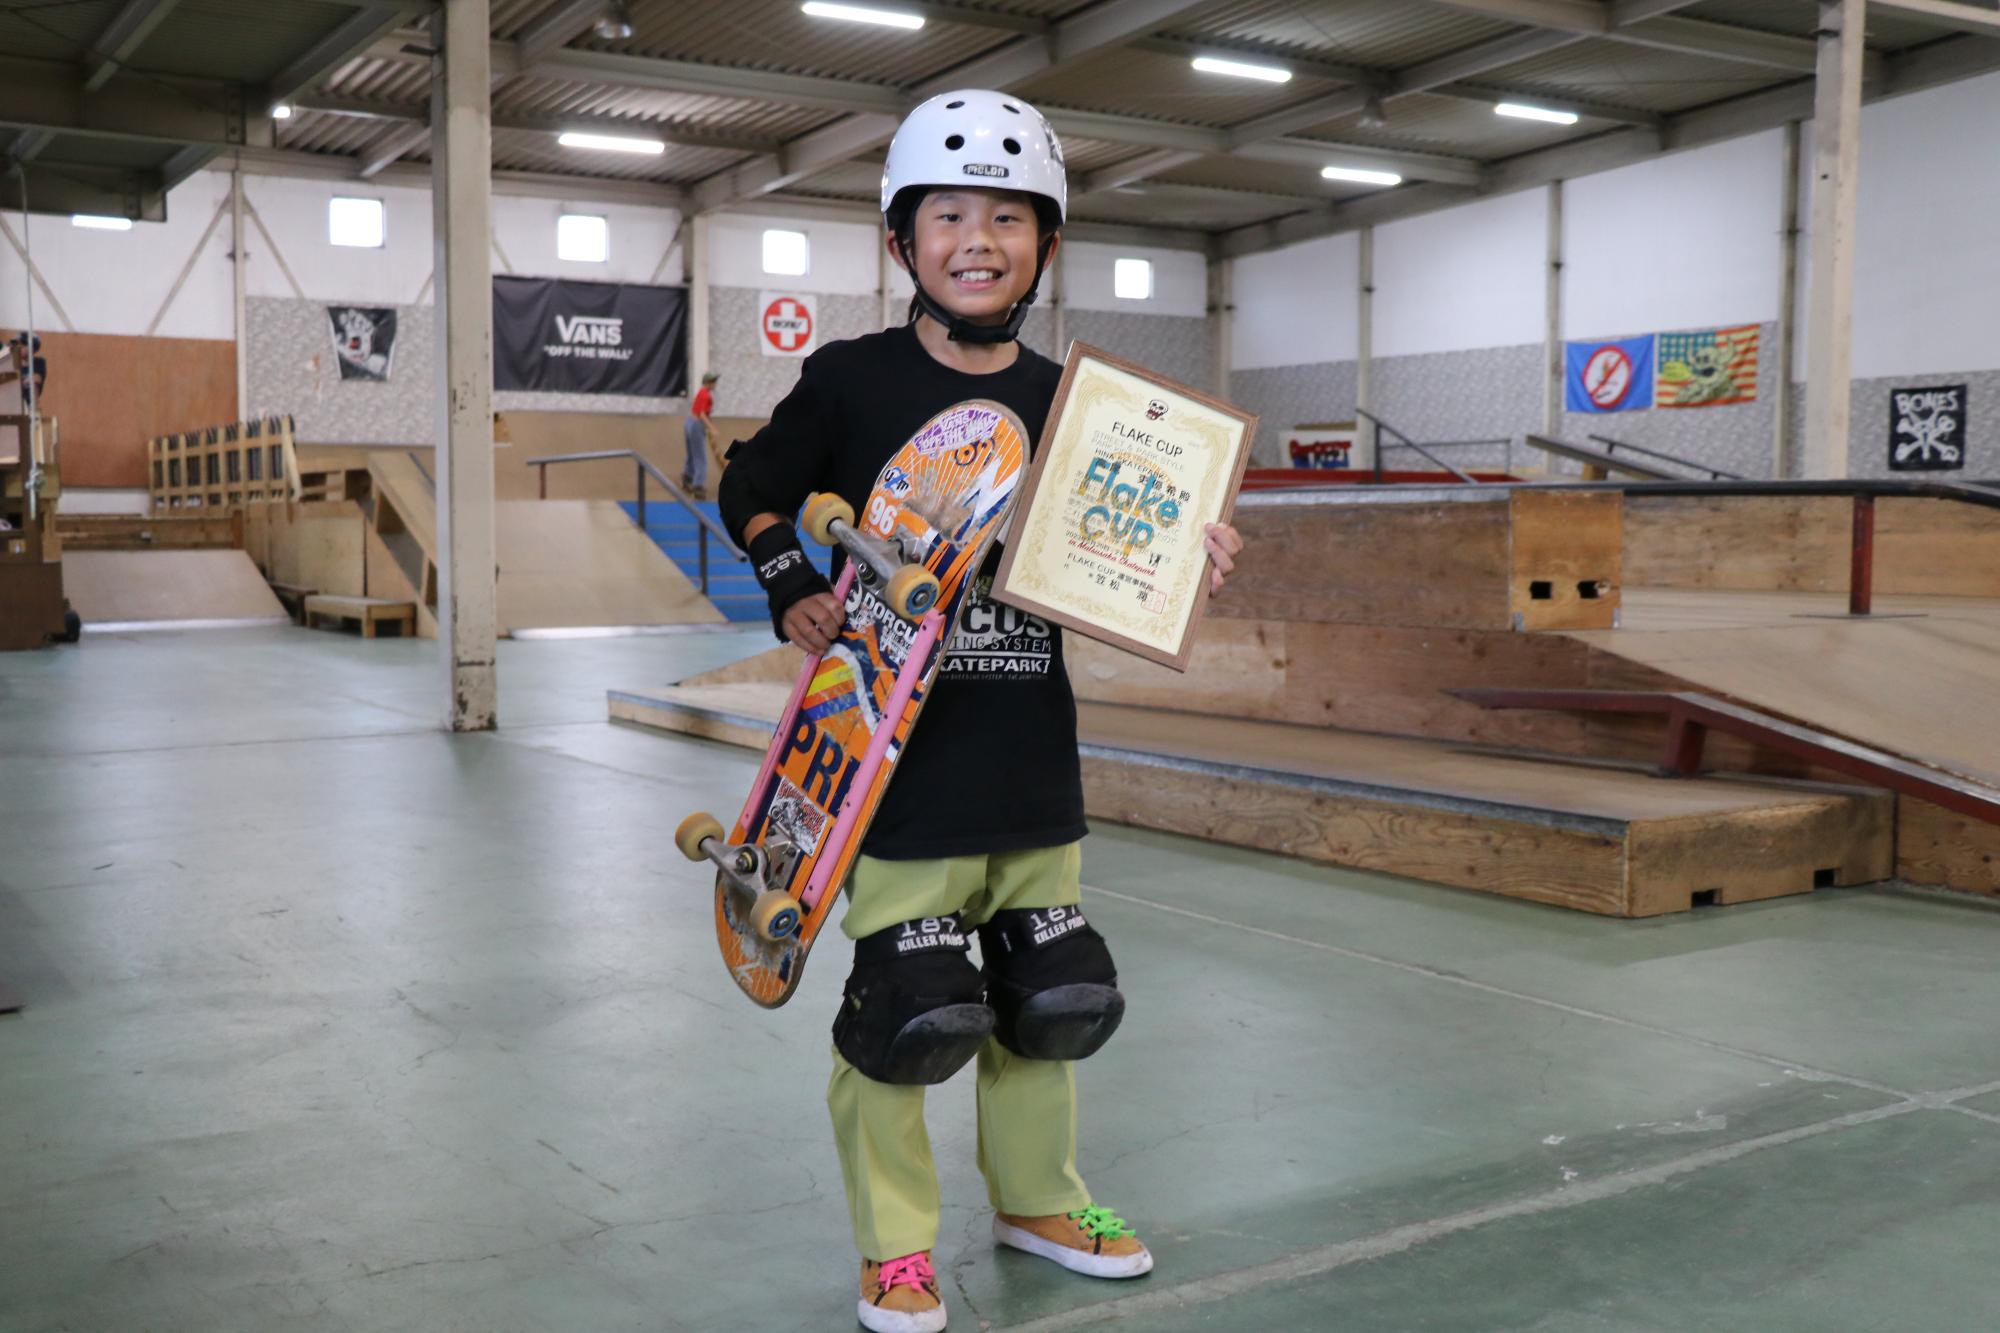 城下小学校3年の高尾吏優希さんが山崎町にあるヒナスケートパークの練習場内で賞状とスケートボードを手に笑顔を見せている写真